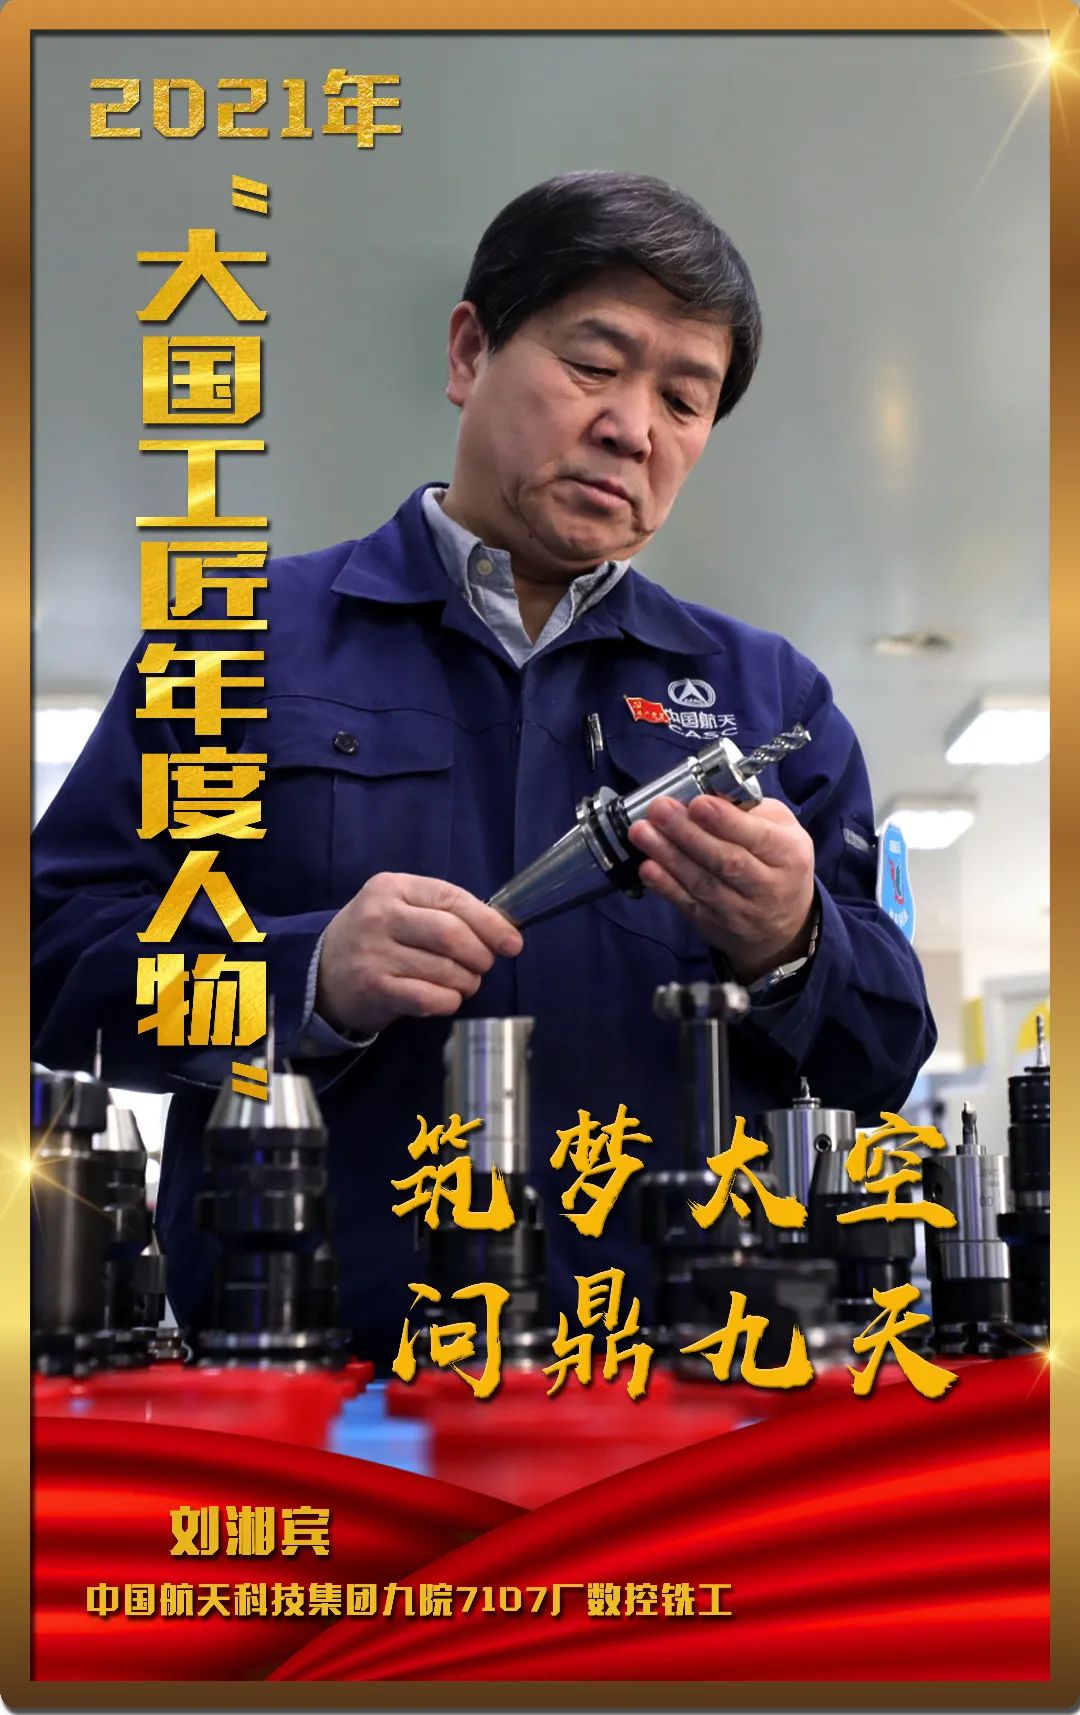 2021年大国工匠年度人物在广州揭晓张路明入选